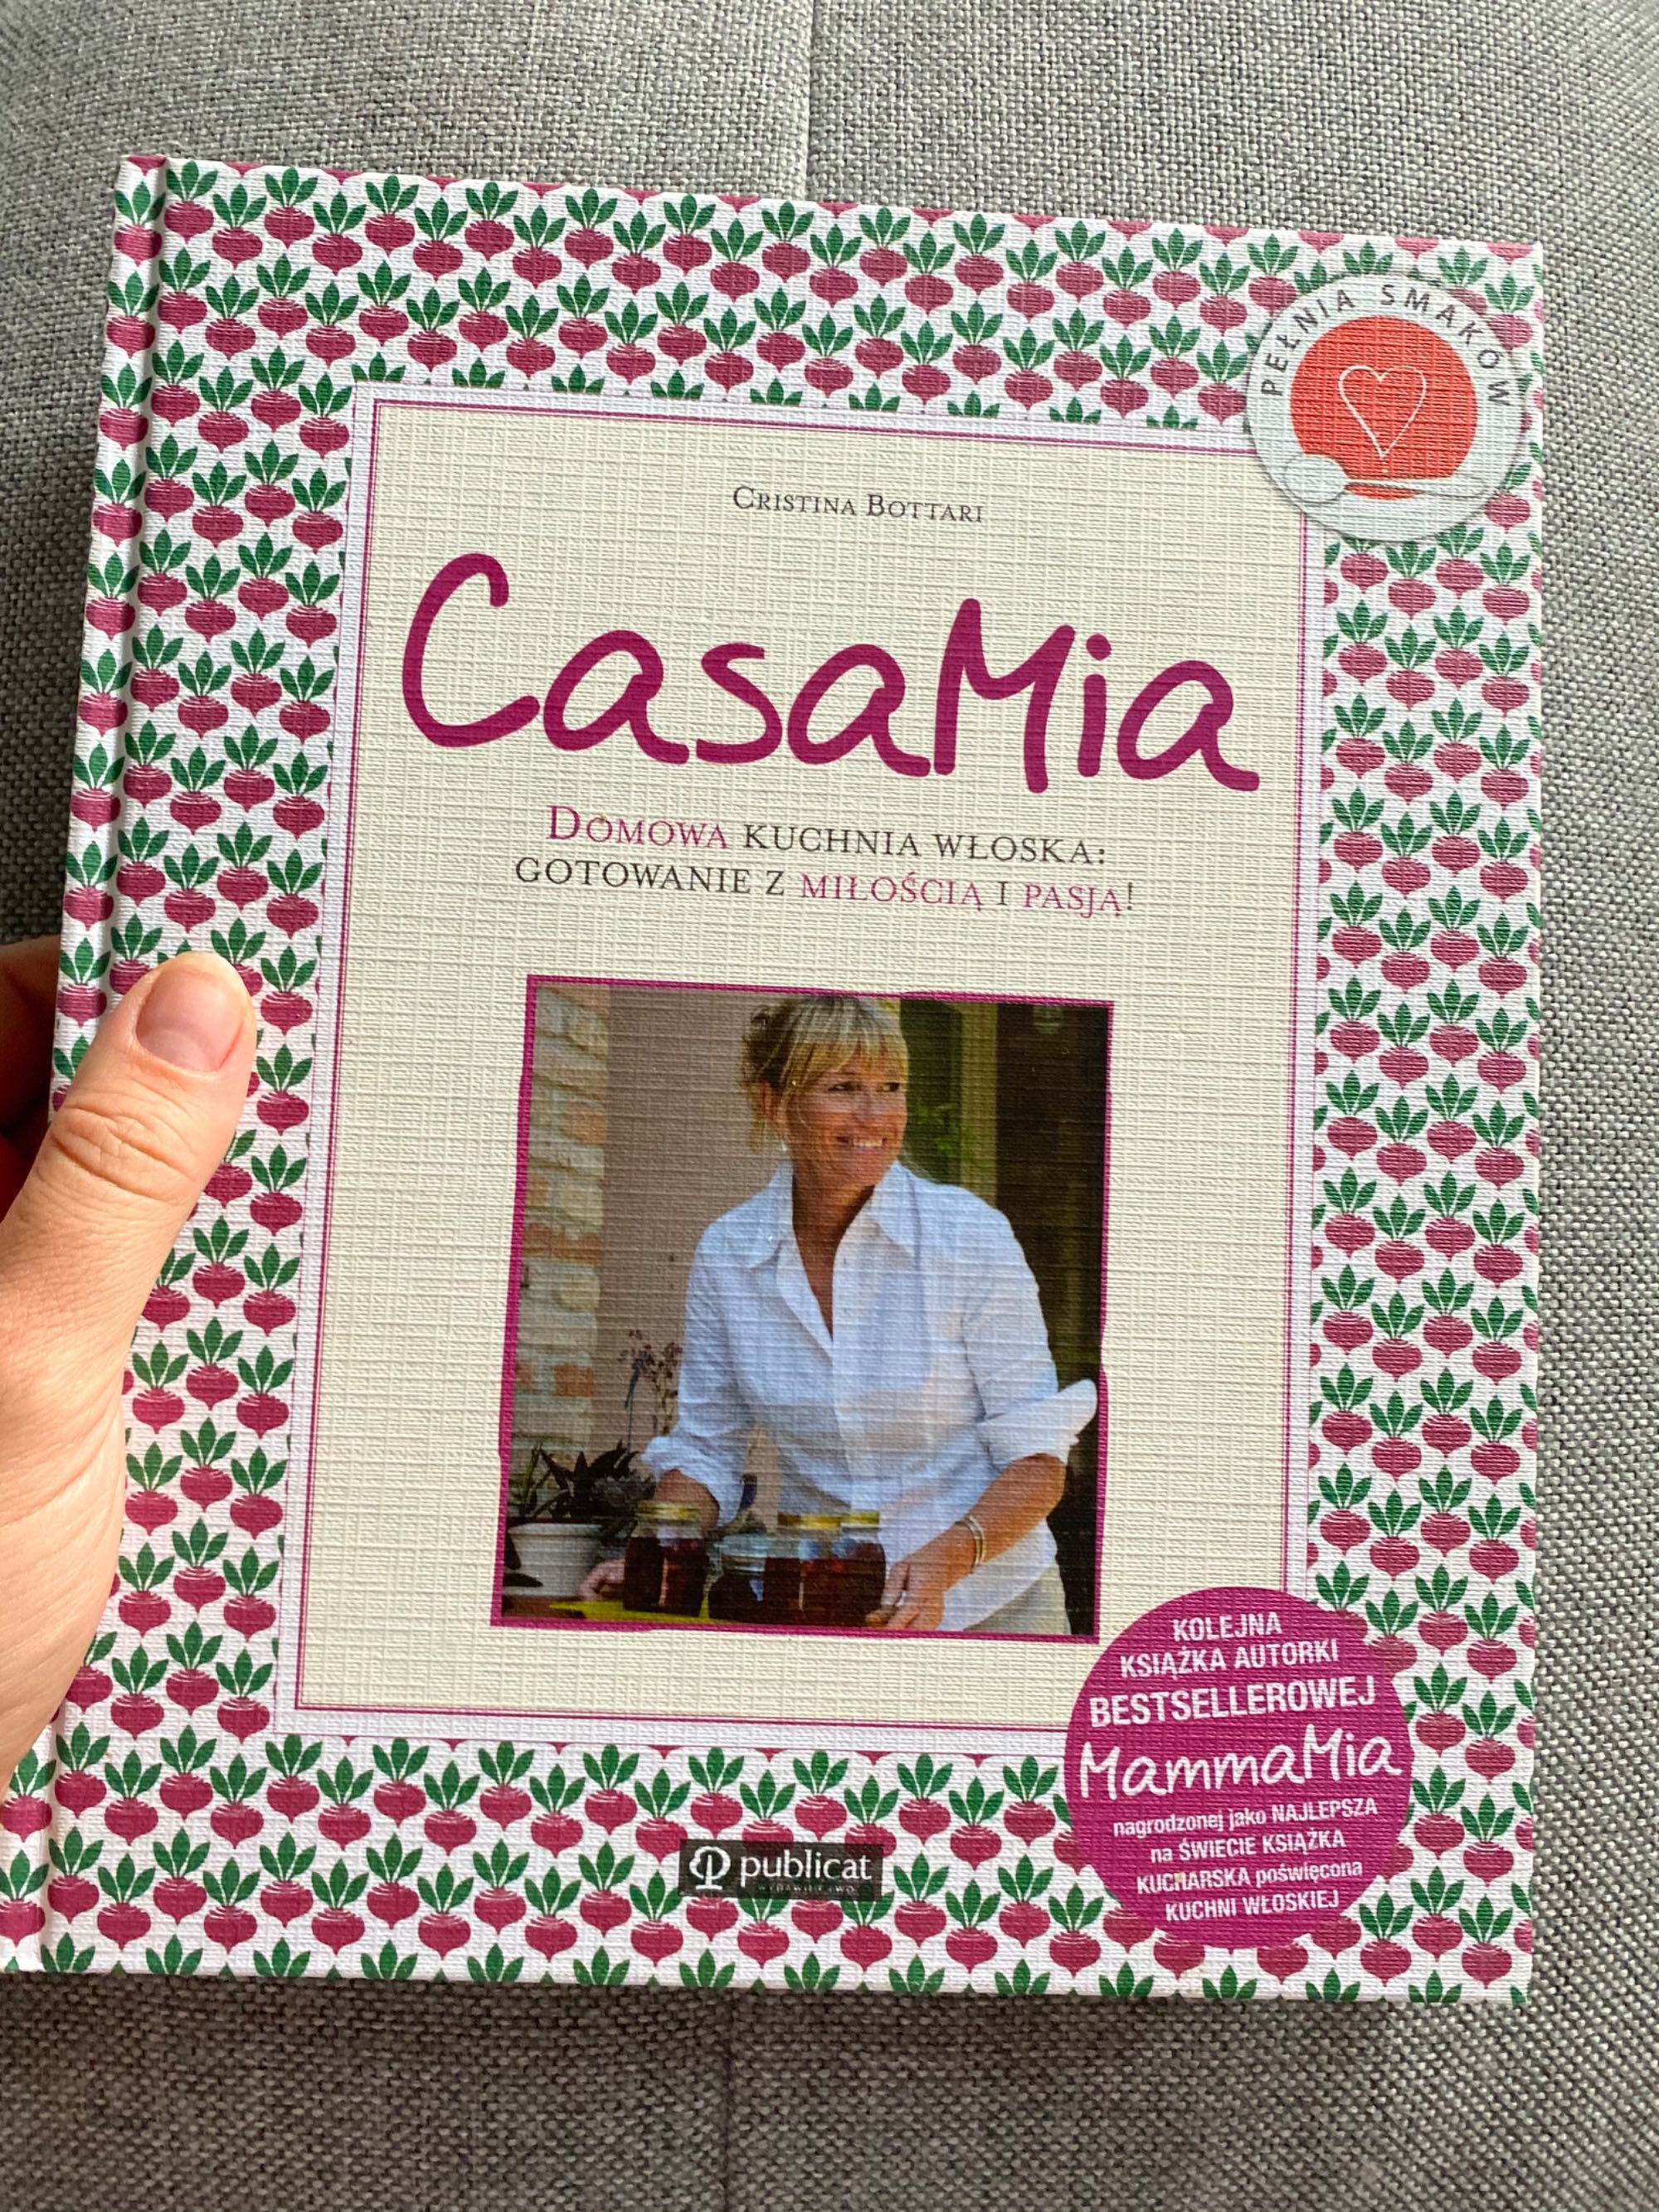 Książka kucharska - kuchnia włoska - Christina Bottari Casa Mia